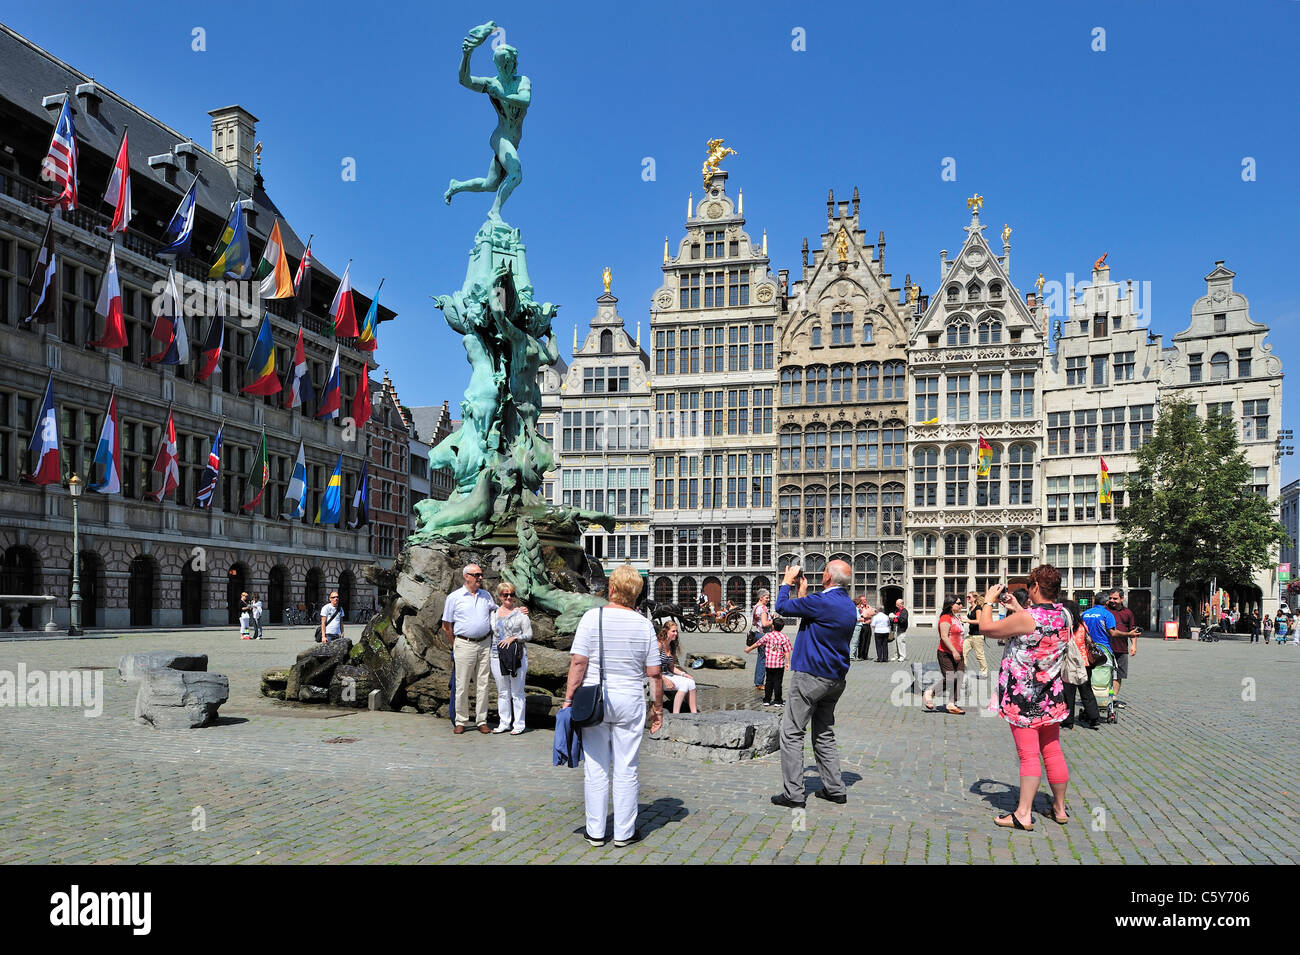 Antwerpen Rathaus, Zunfthäuser, die Statue von Brabo und Touristen posiert auf dem Grote Markt / Main Square / Grand Place, Belgien Stockfoto